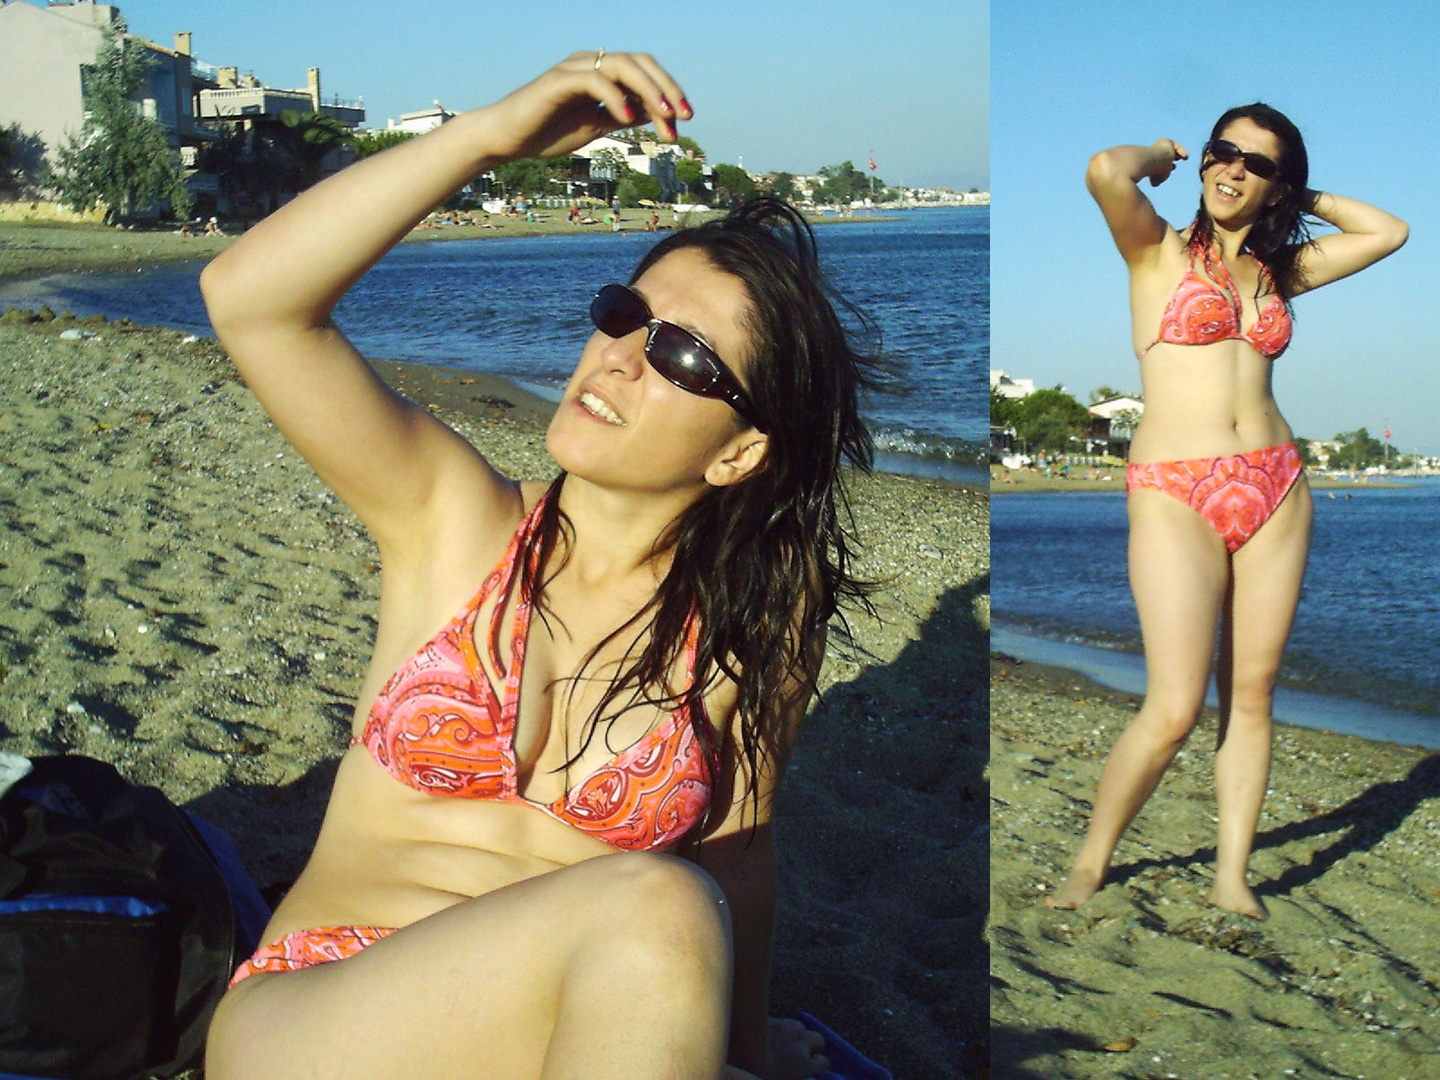 Dorothea nur mit pink Bikinis und Sonnenbrillen - Freies Haar und freche Pose am Strand